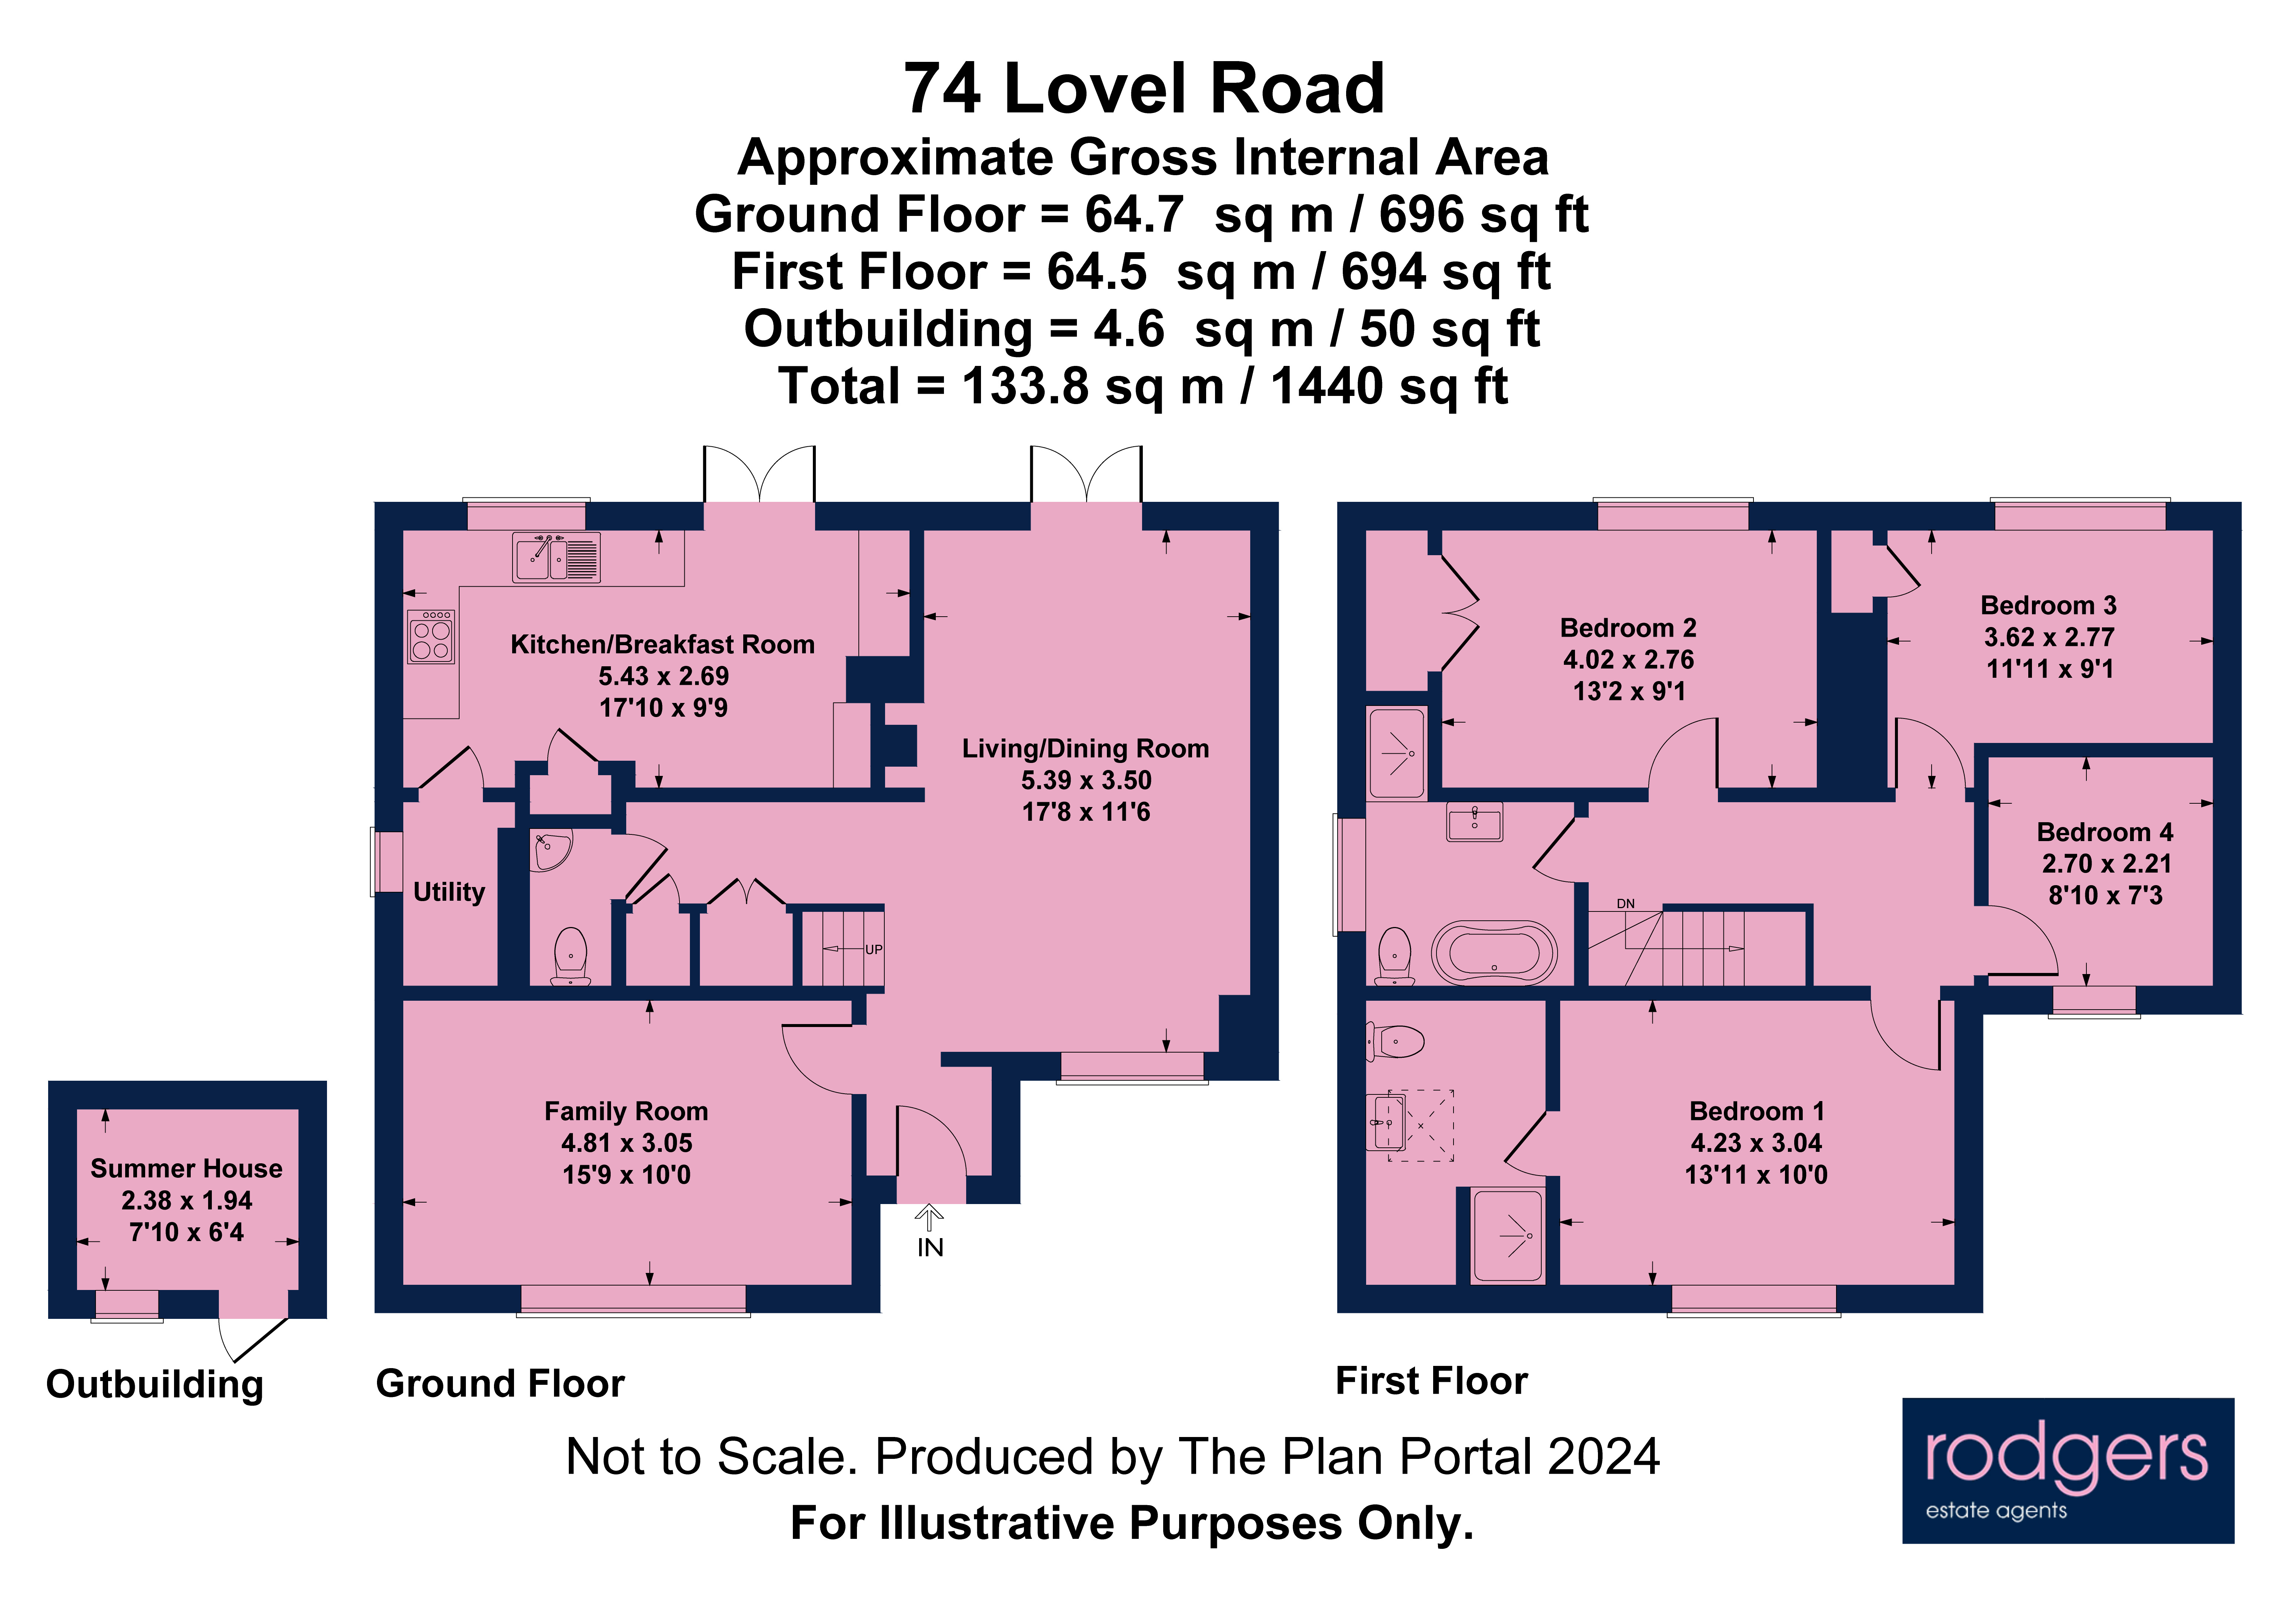 Floorplans For Lovel Road, Chalfont St Peter, Buckinghamshire